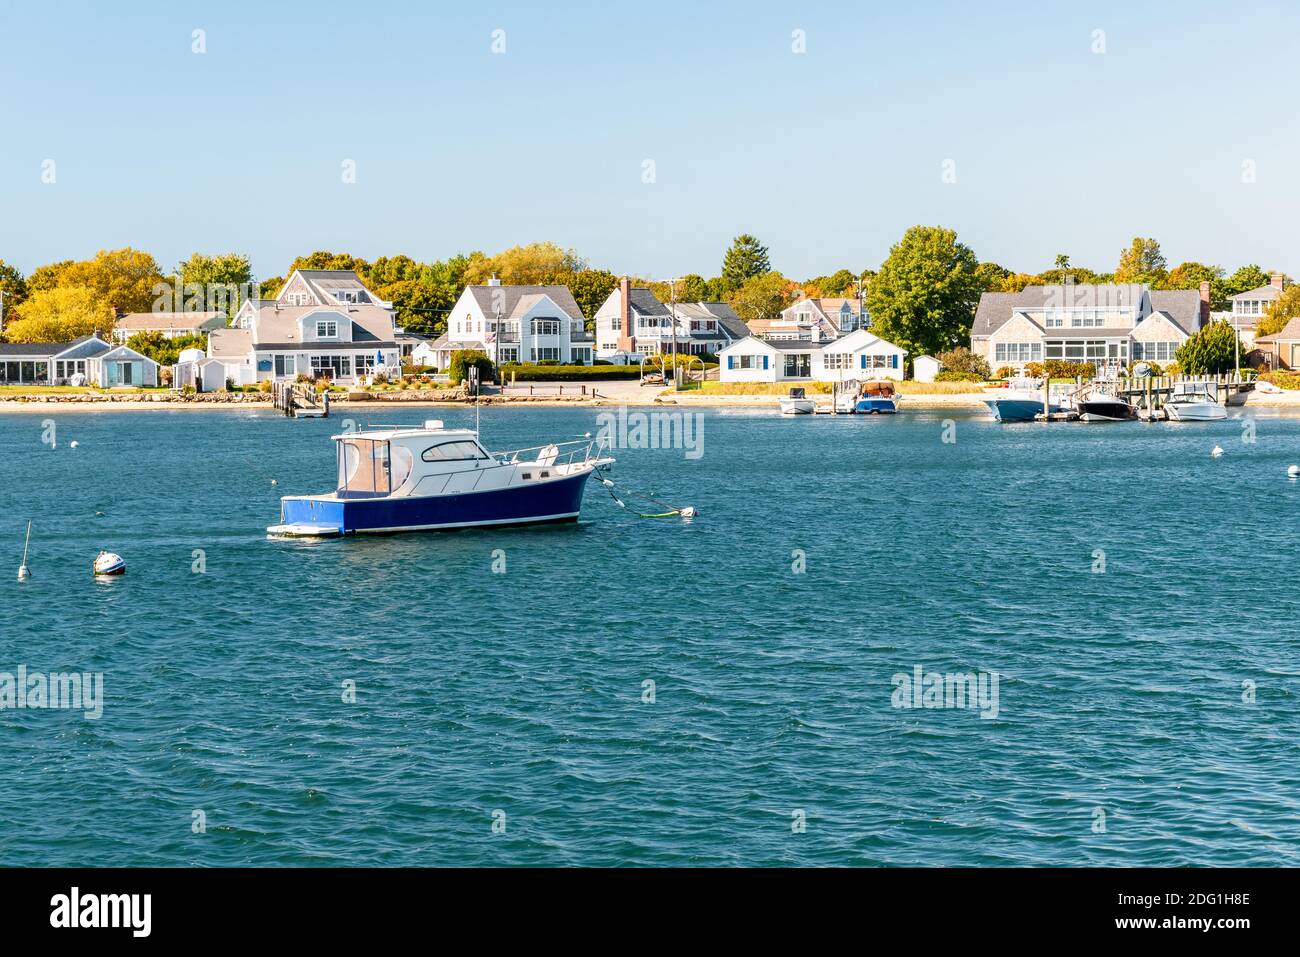 Barca vuota ormeggiata al largo di una costa sabbiosa fiancheggiata da edifici residenziali con jetties in legno privato. Hyannis, Capo Cod, ma, Stati Uniti. Foto Stock